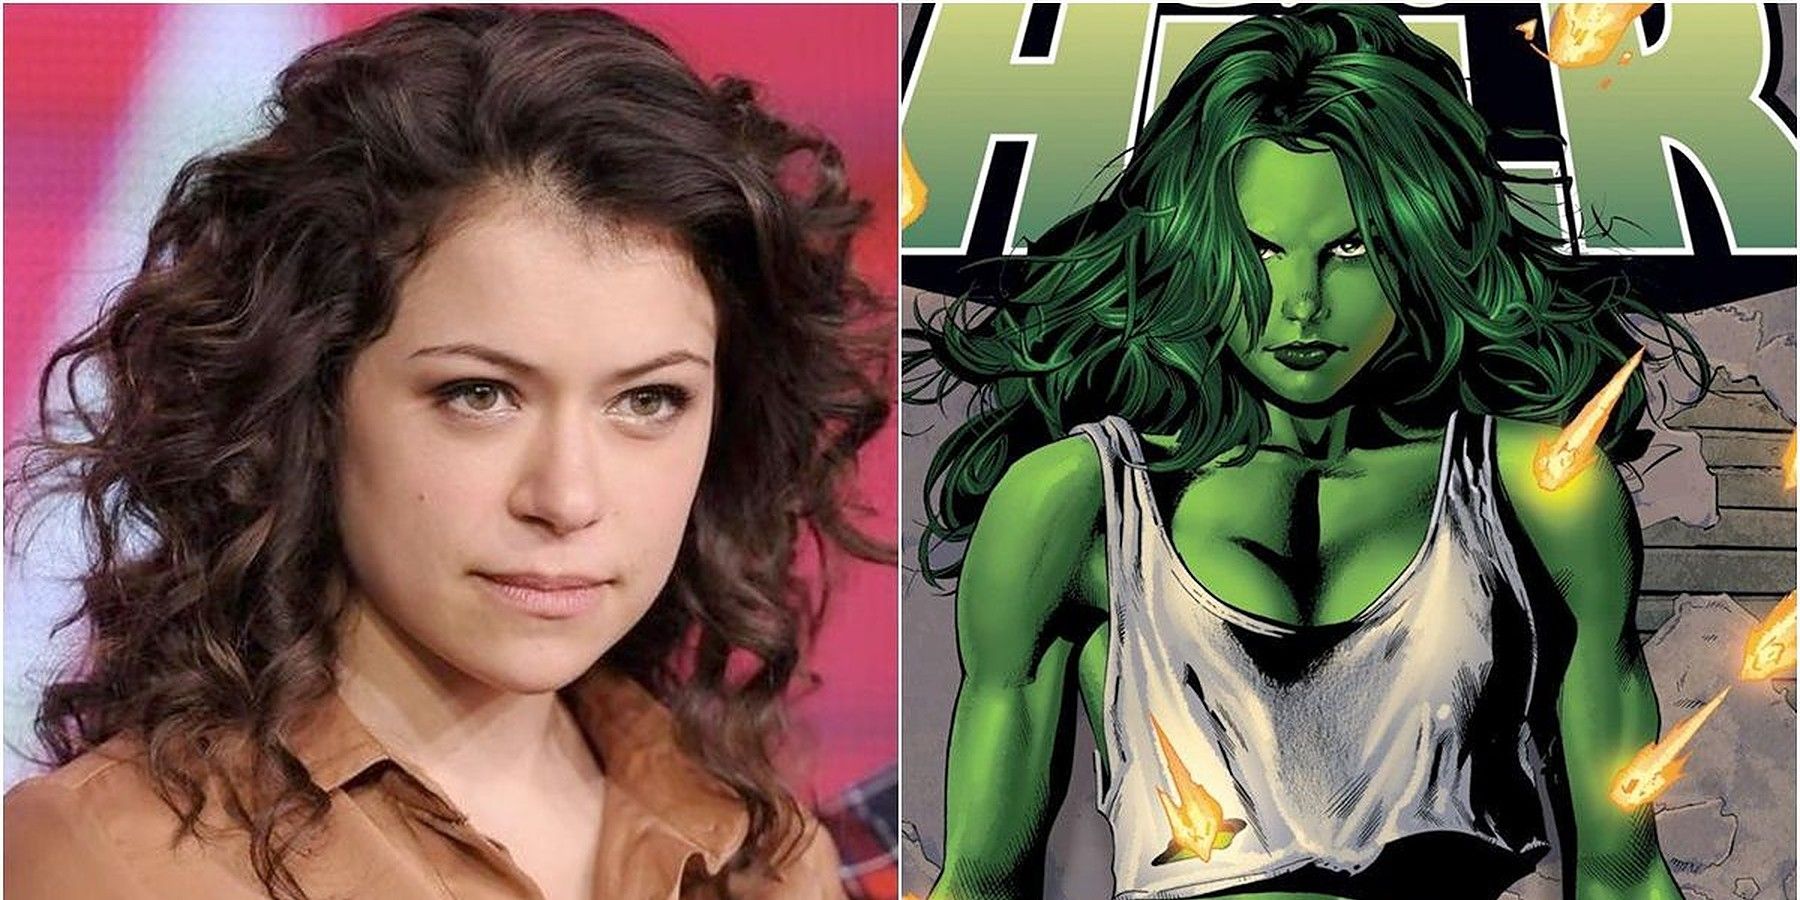 Quem é Tatiana Maslany? 10 fatos sobre a atriz She-Hulk do MCU